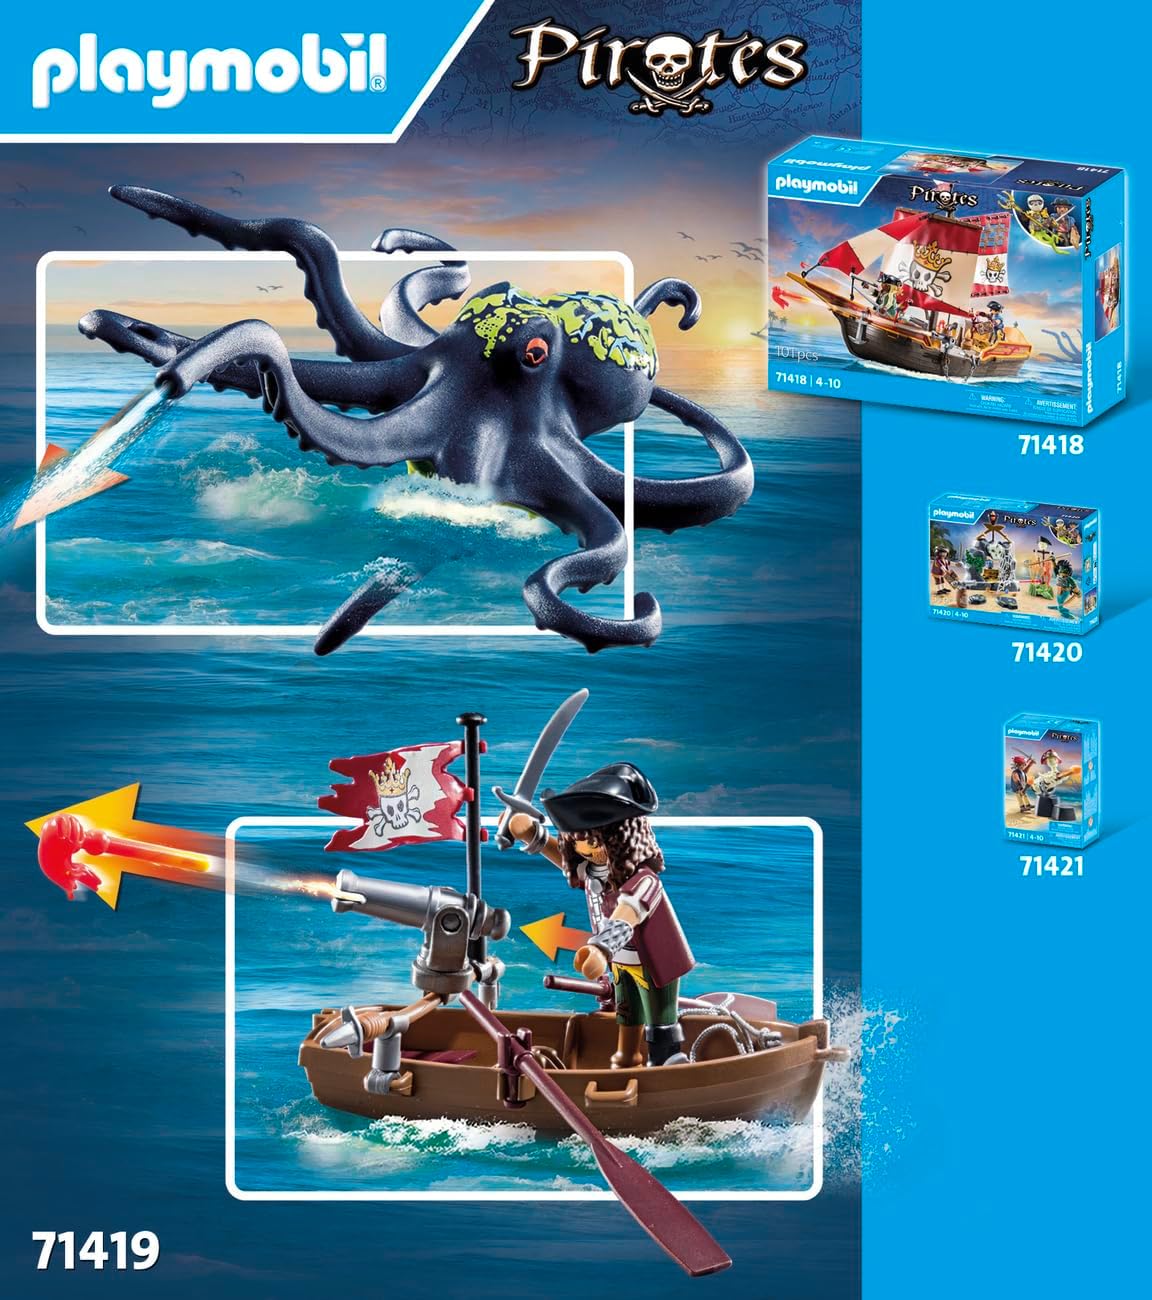 Playmobil 71419 Piratas: Batalha com o Polvo Gigante, Piratas vs. Deepers, polvo com função de borrifar água e canhão de disparo, encenação divertida e imaginativa, conjuntos de jogos adequados para crianças de 4 anos ou mais